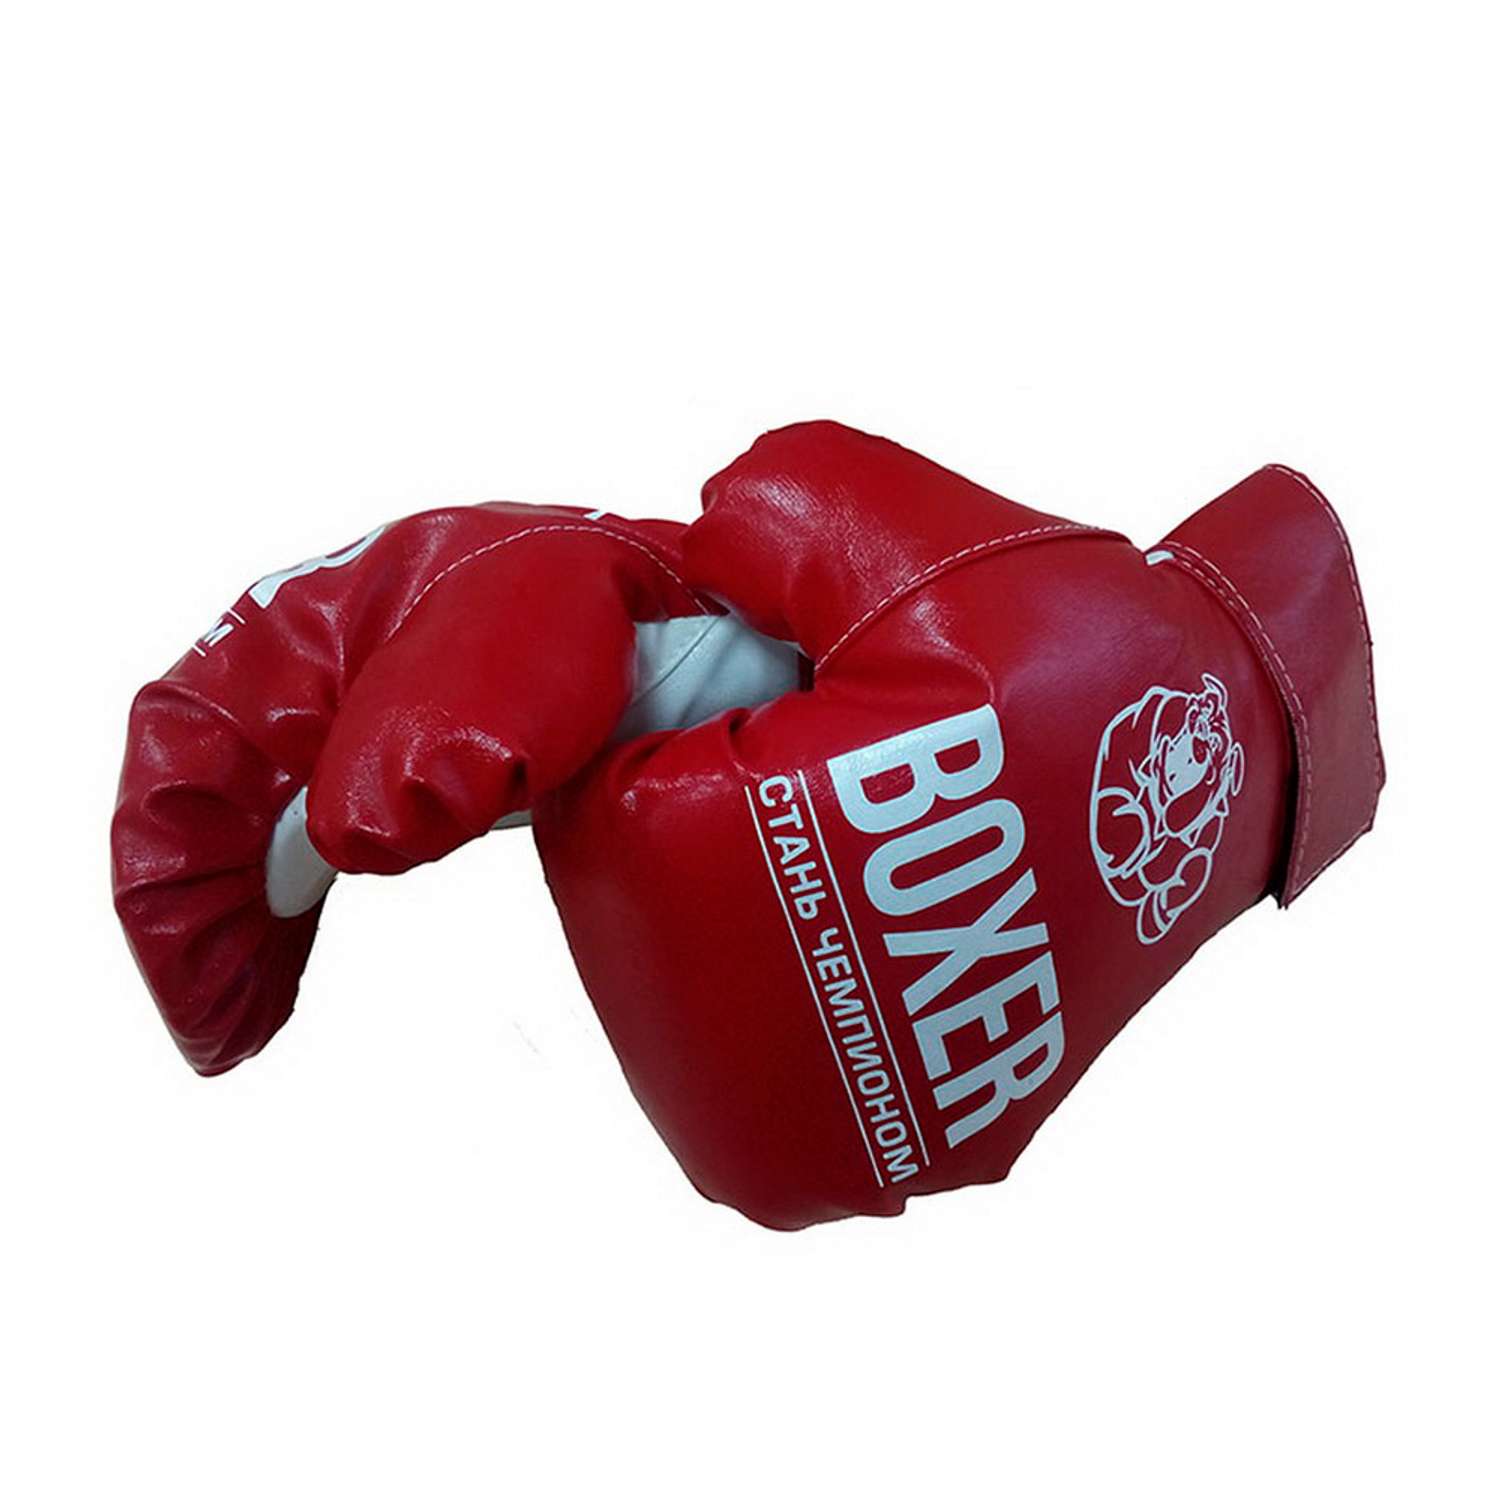 Боксерские перчатки ПК Лидер мт51536 - фото 1